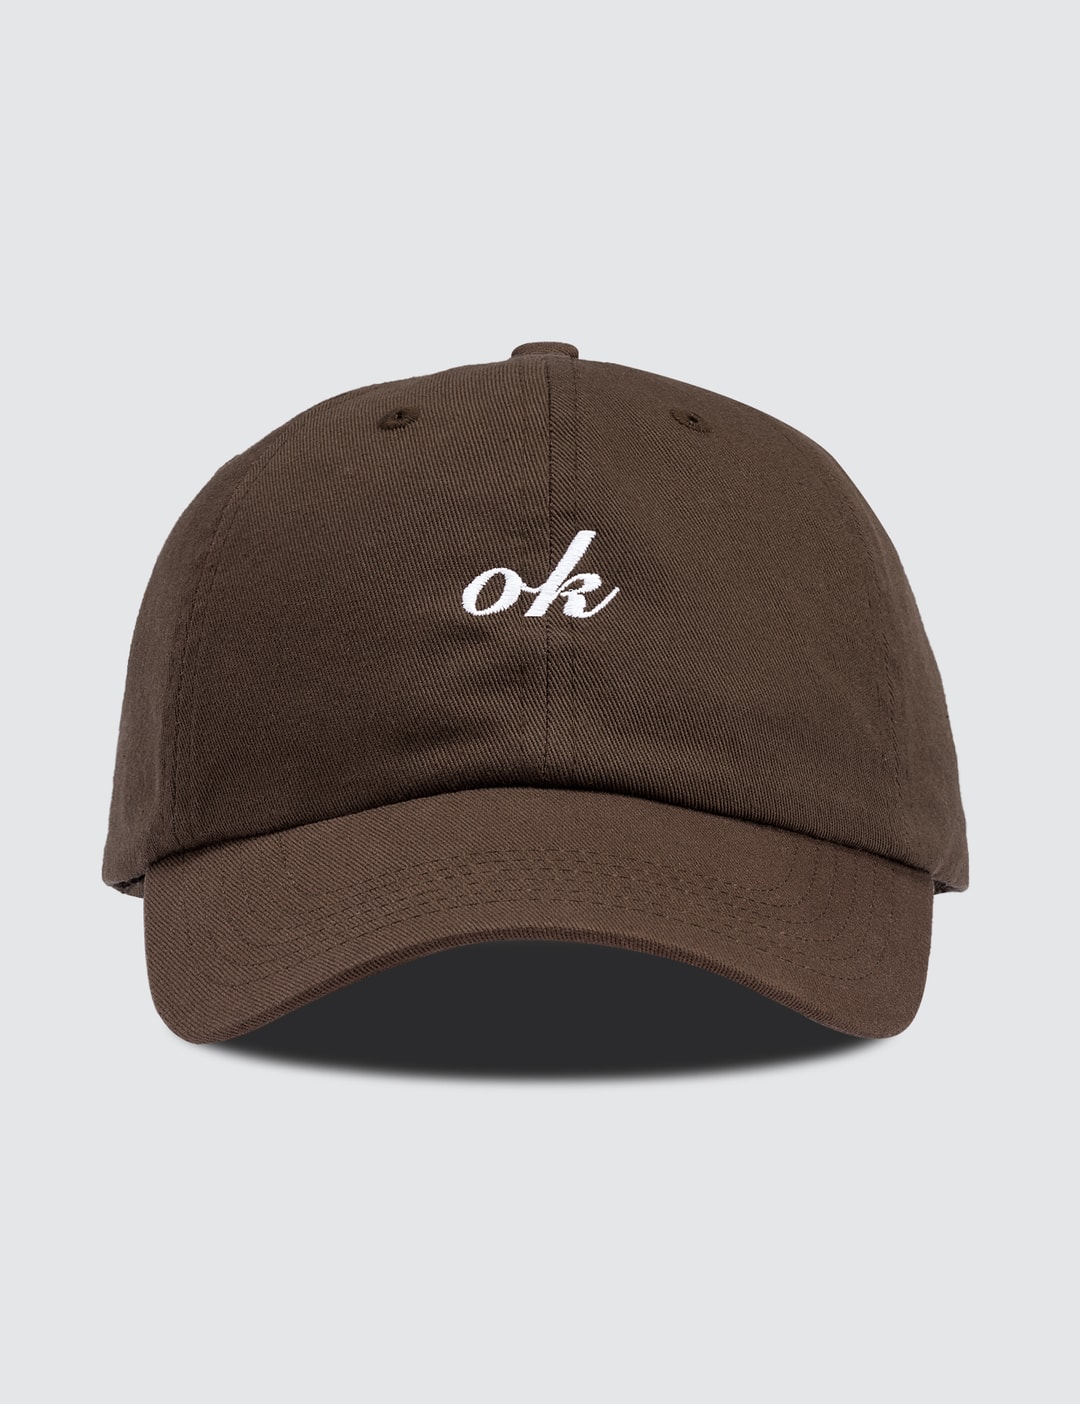 Okokok - OK Italic Logo | HBX - Globally Curated Fashion and Lifestyle ...